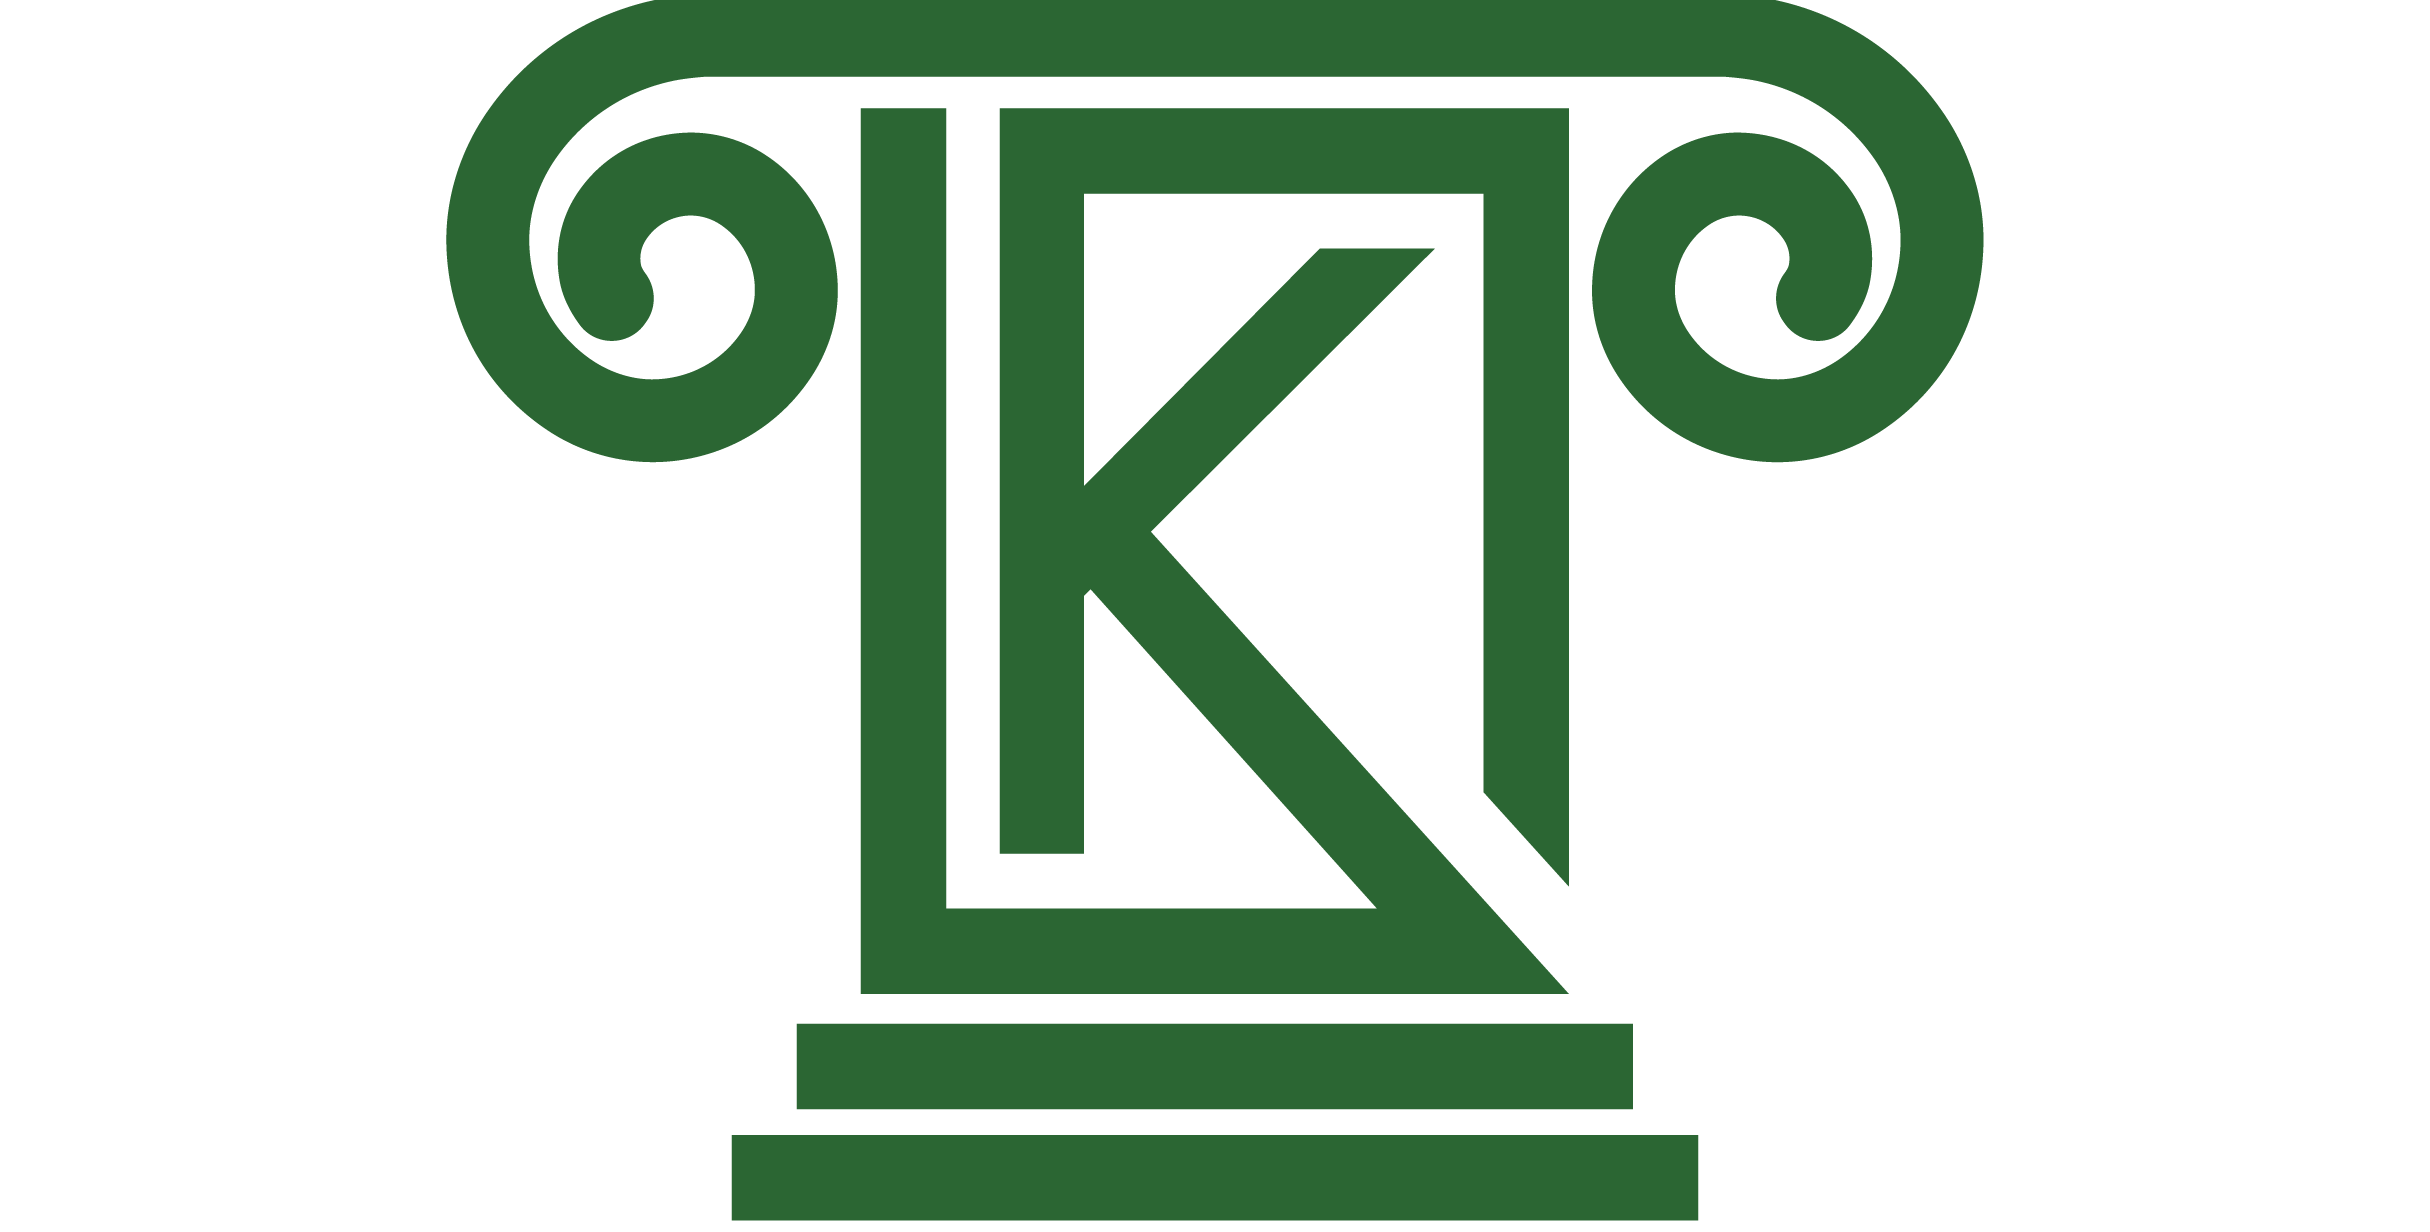 Kecser Công Ty Luật logo